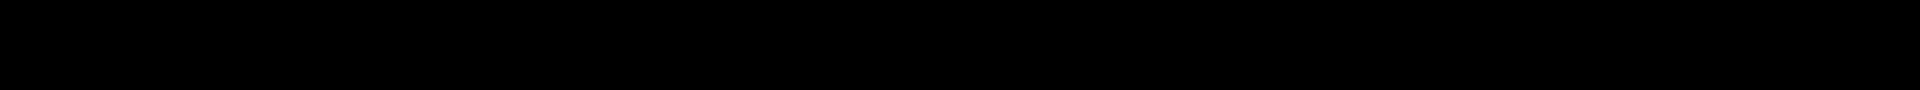 Weißer Pfeil auf schwarzem Hintergrund